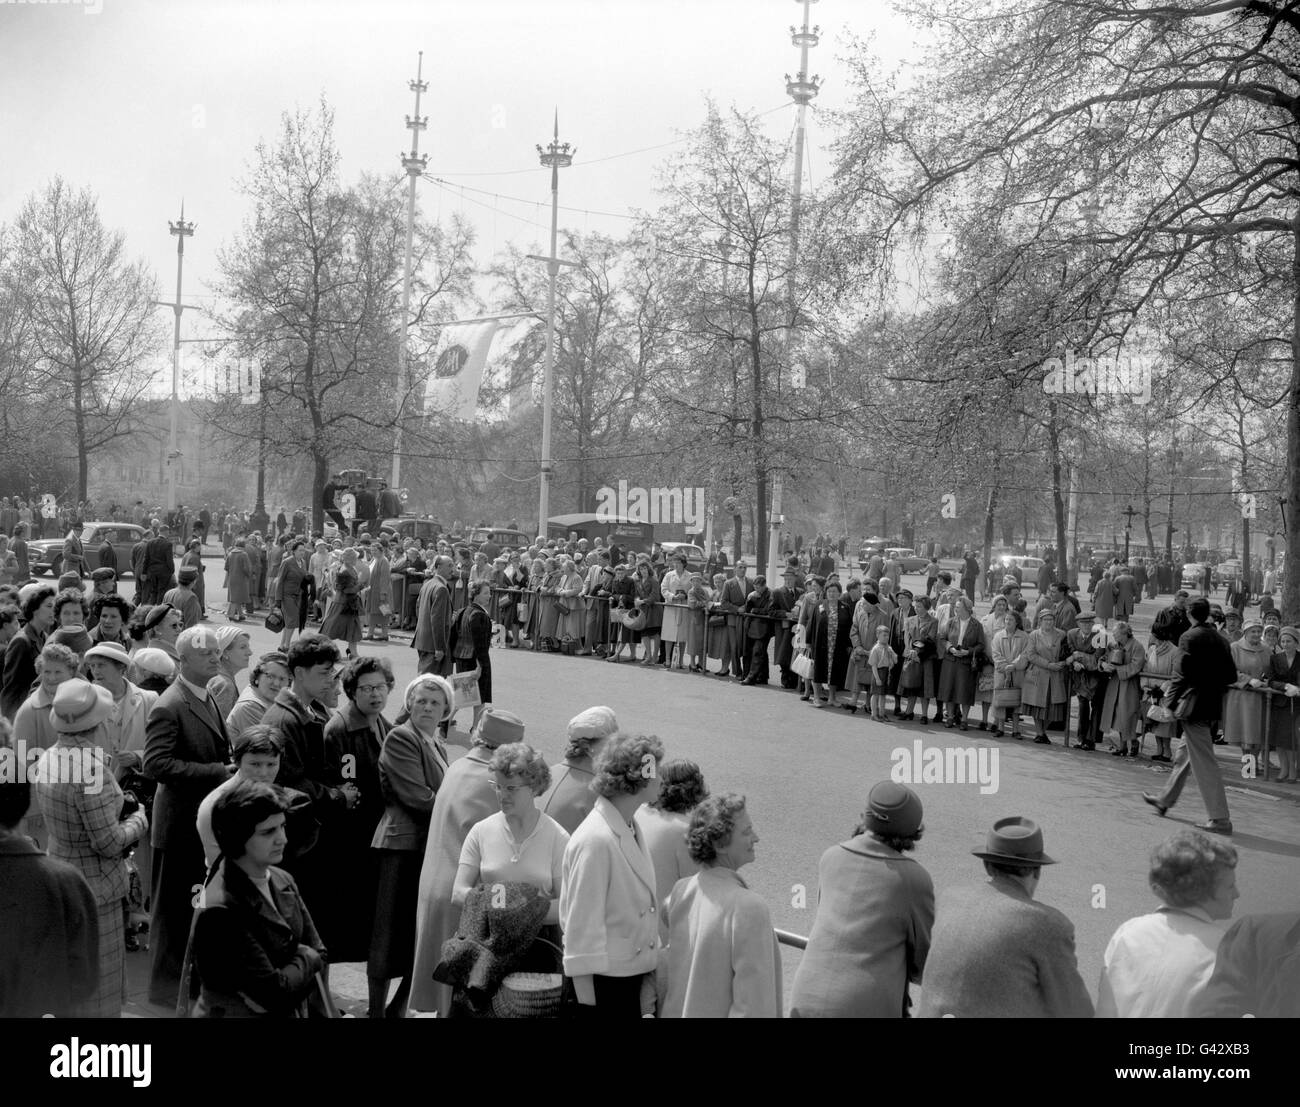 Les foules attendent sous le soleil en espérant un aperçu de la mariée, la princesse Margaret, devant Clarence House, Londres. Banque D'Images